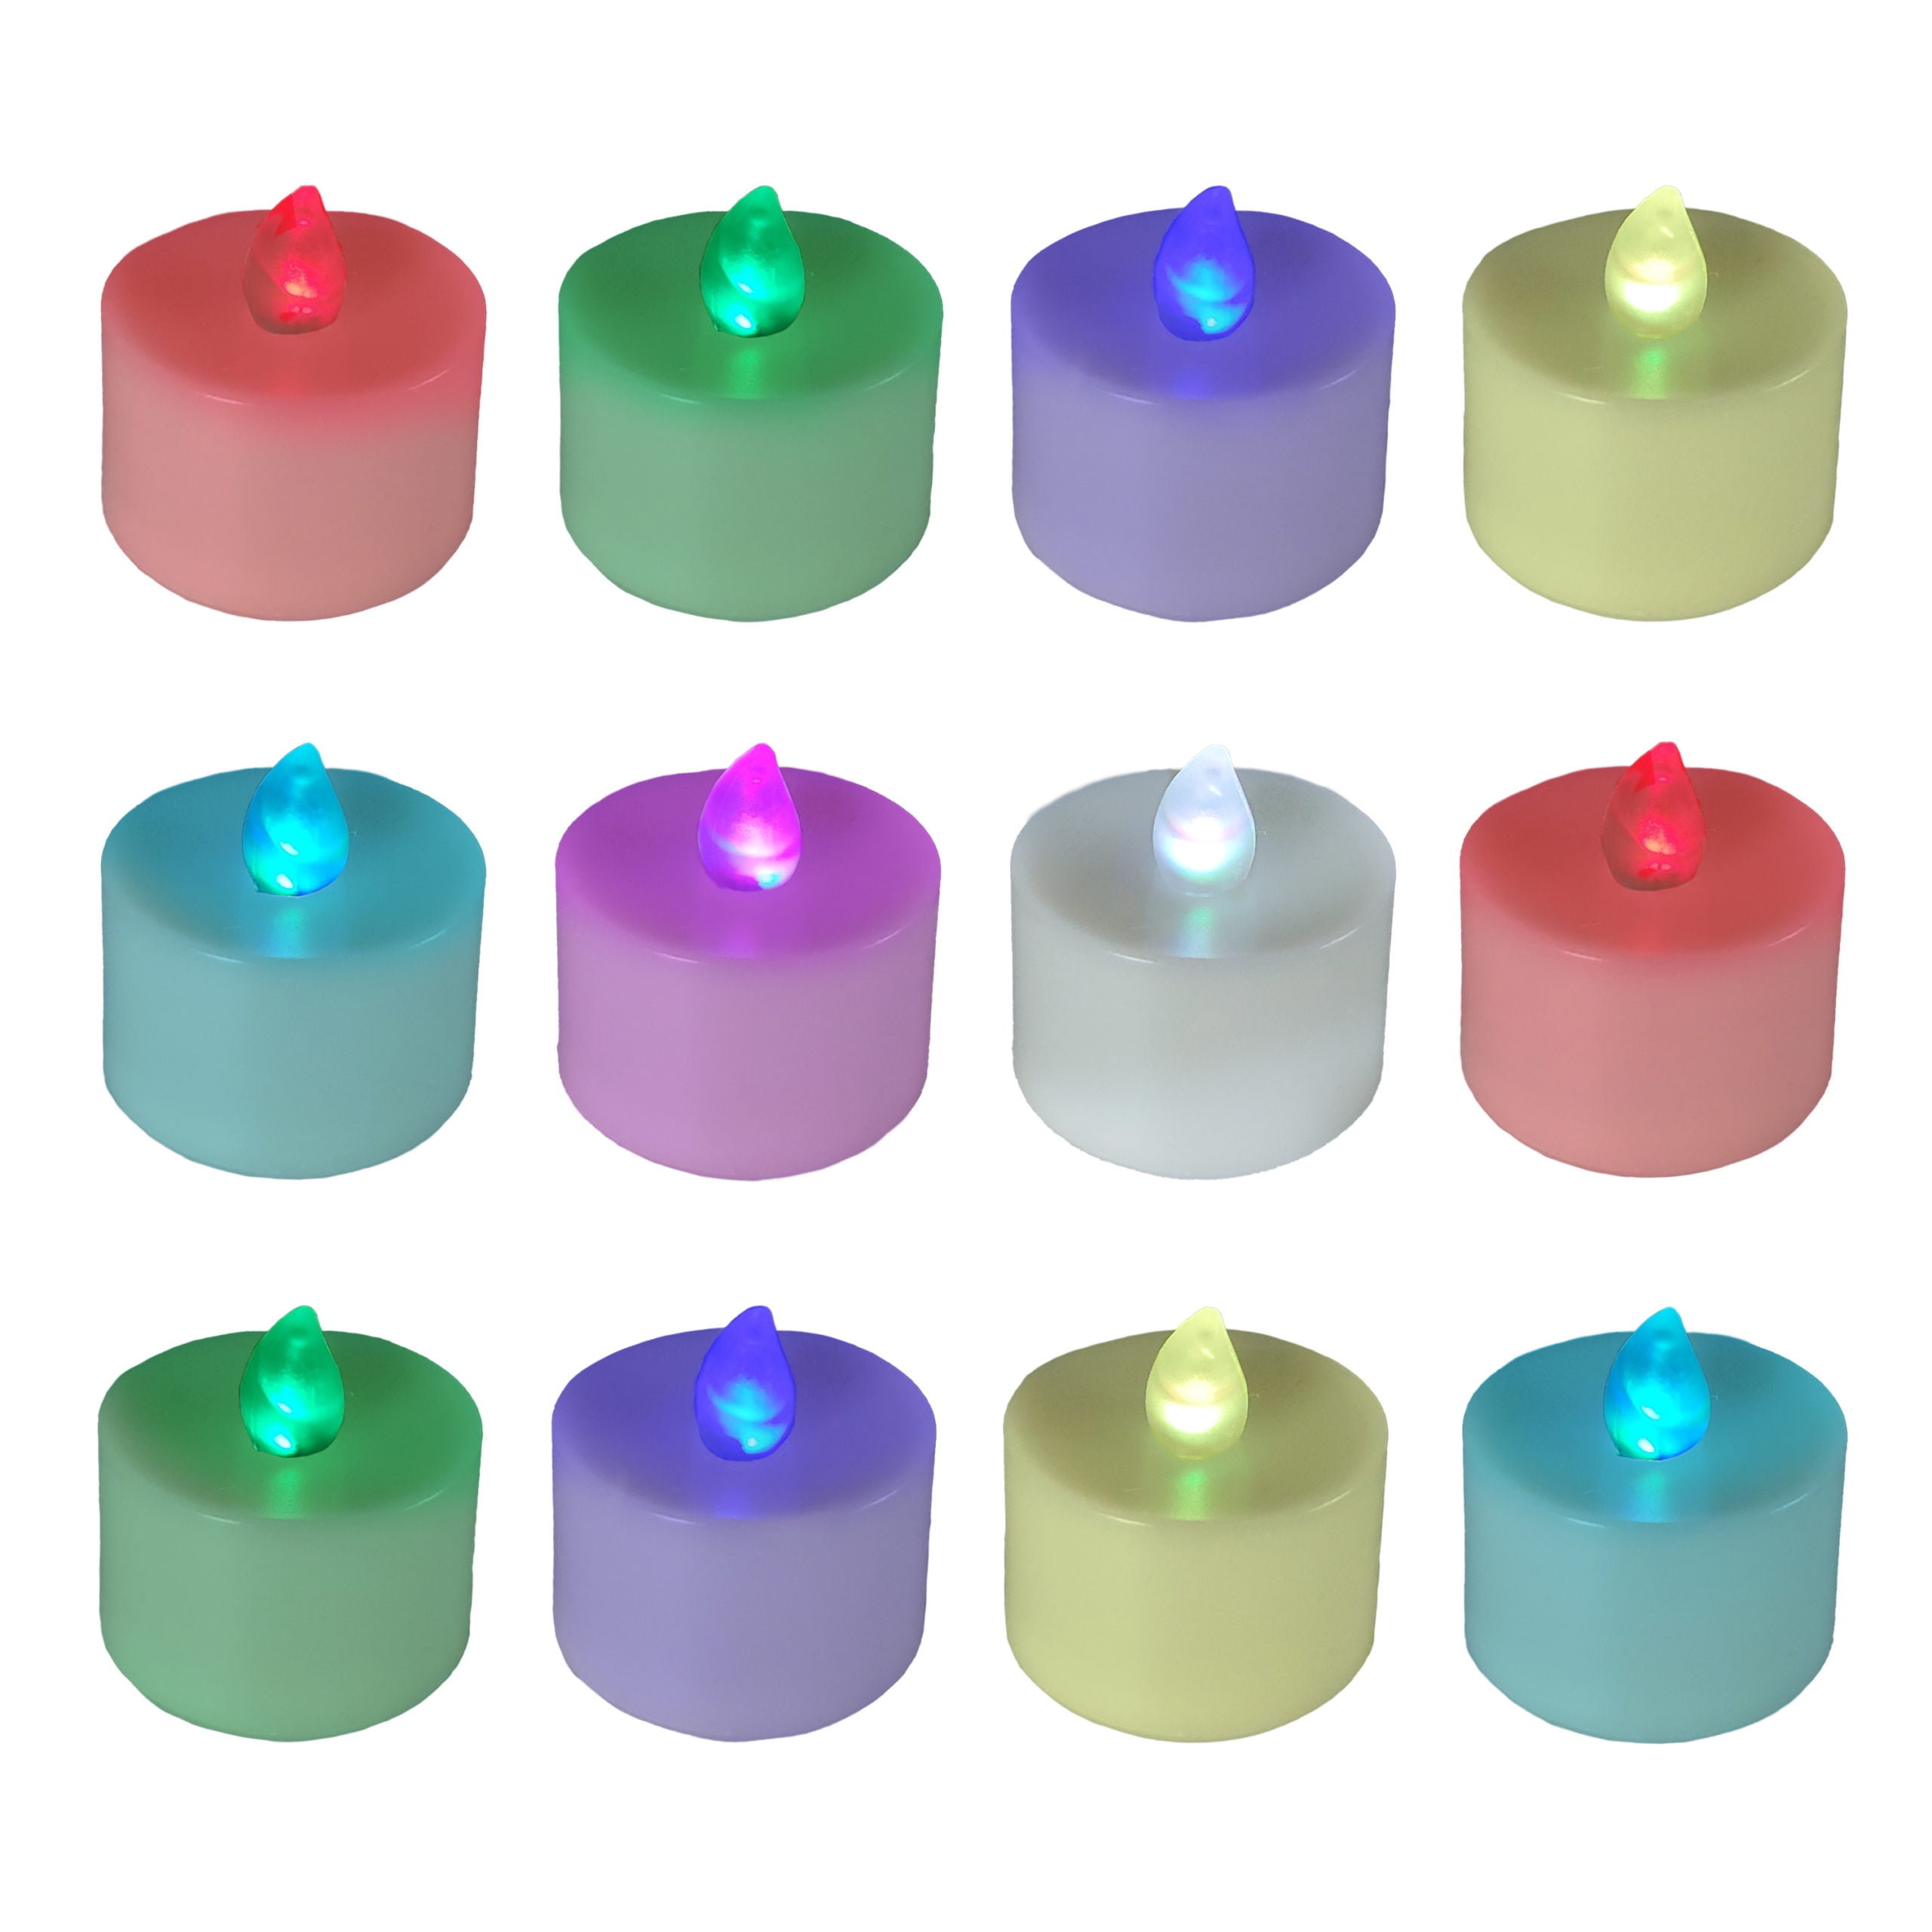 Cusco mærkelig Logisk Battery Operated Tea Light Candles - Set of 12 (Multicolor) - Walmart.com